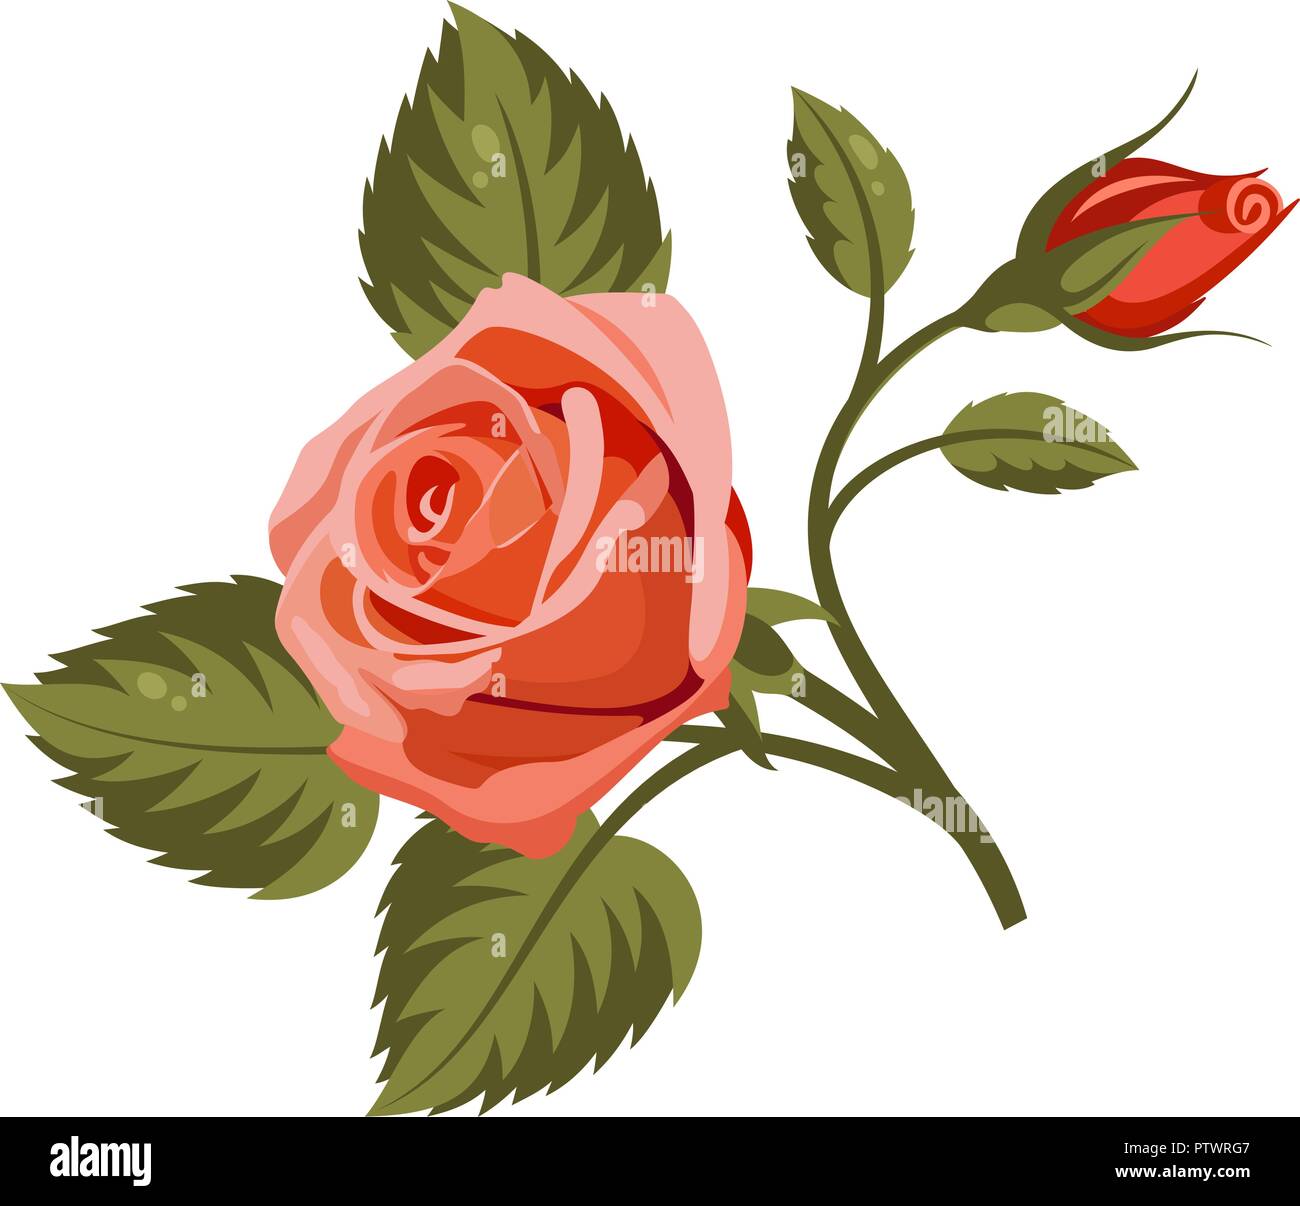 Illustrazione Vettoriale di rose rosse isolato su sfondo bianco. Utilizzare per il disegno di tessuto, riempimenti e decorare cartoline di auguri, inviti Illustrazione Vettoriale